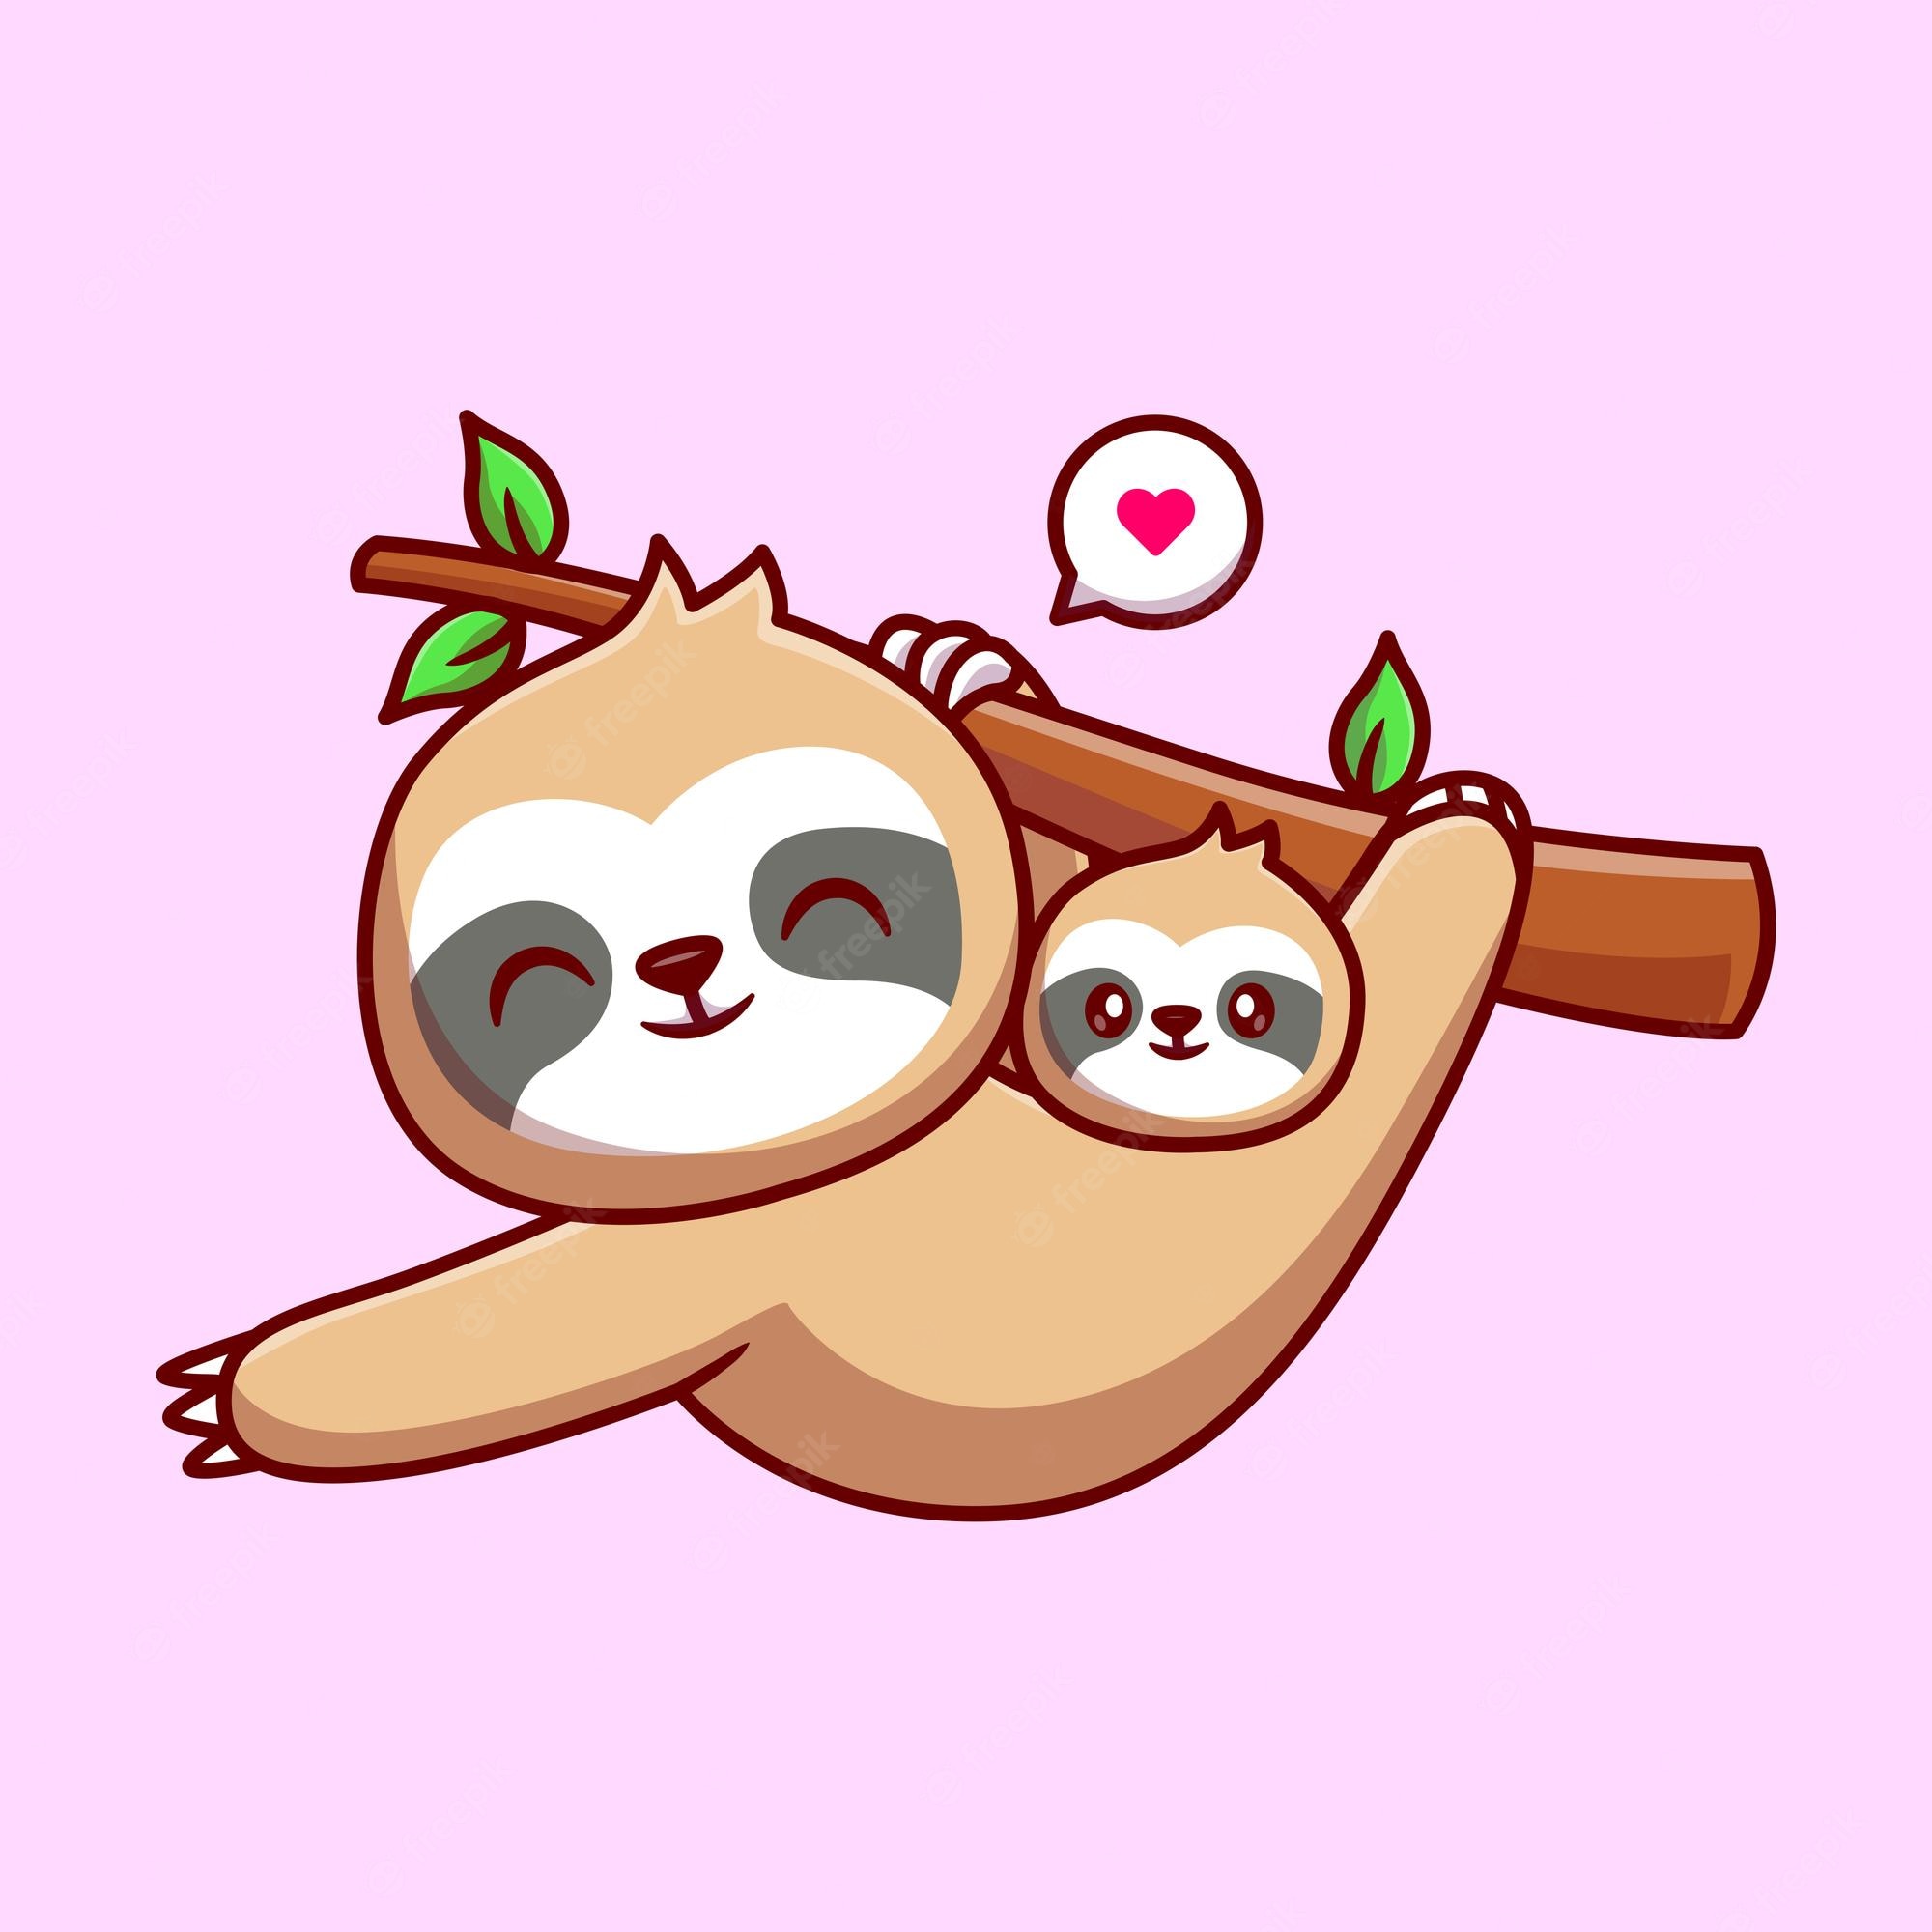 Funny Sloth Image